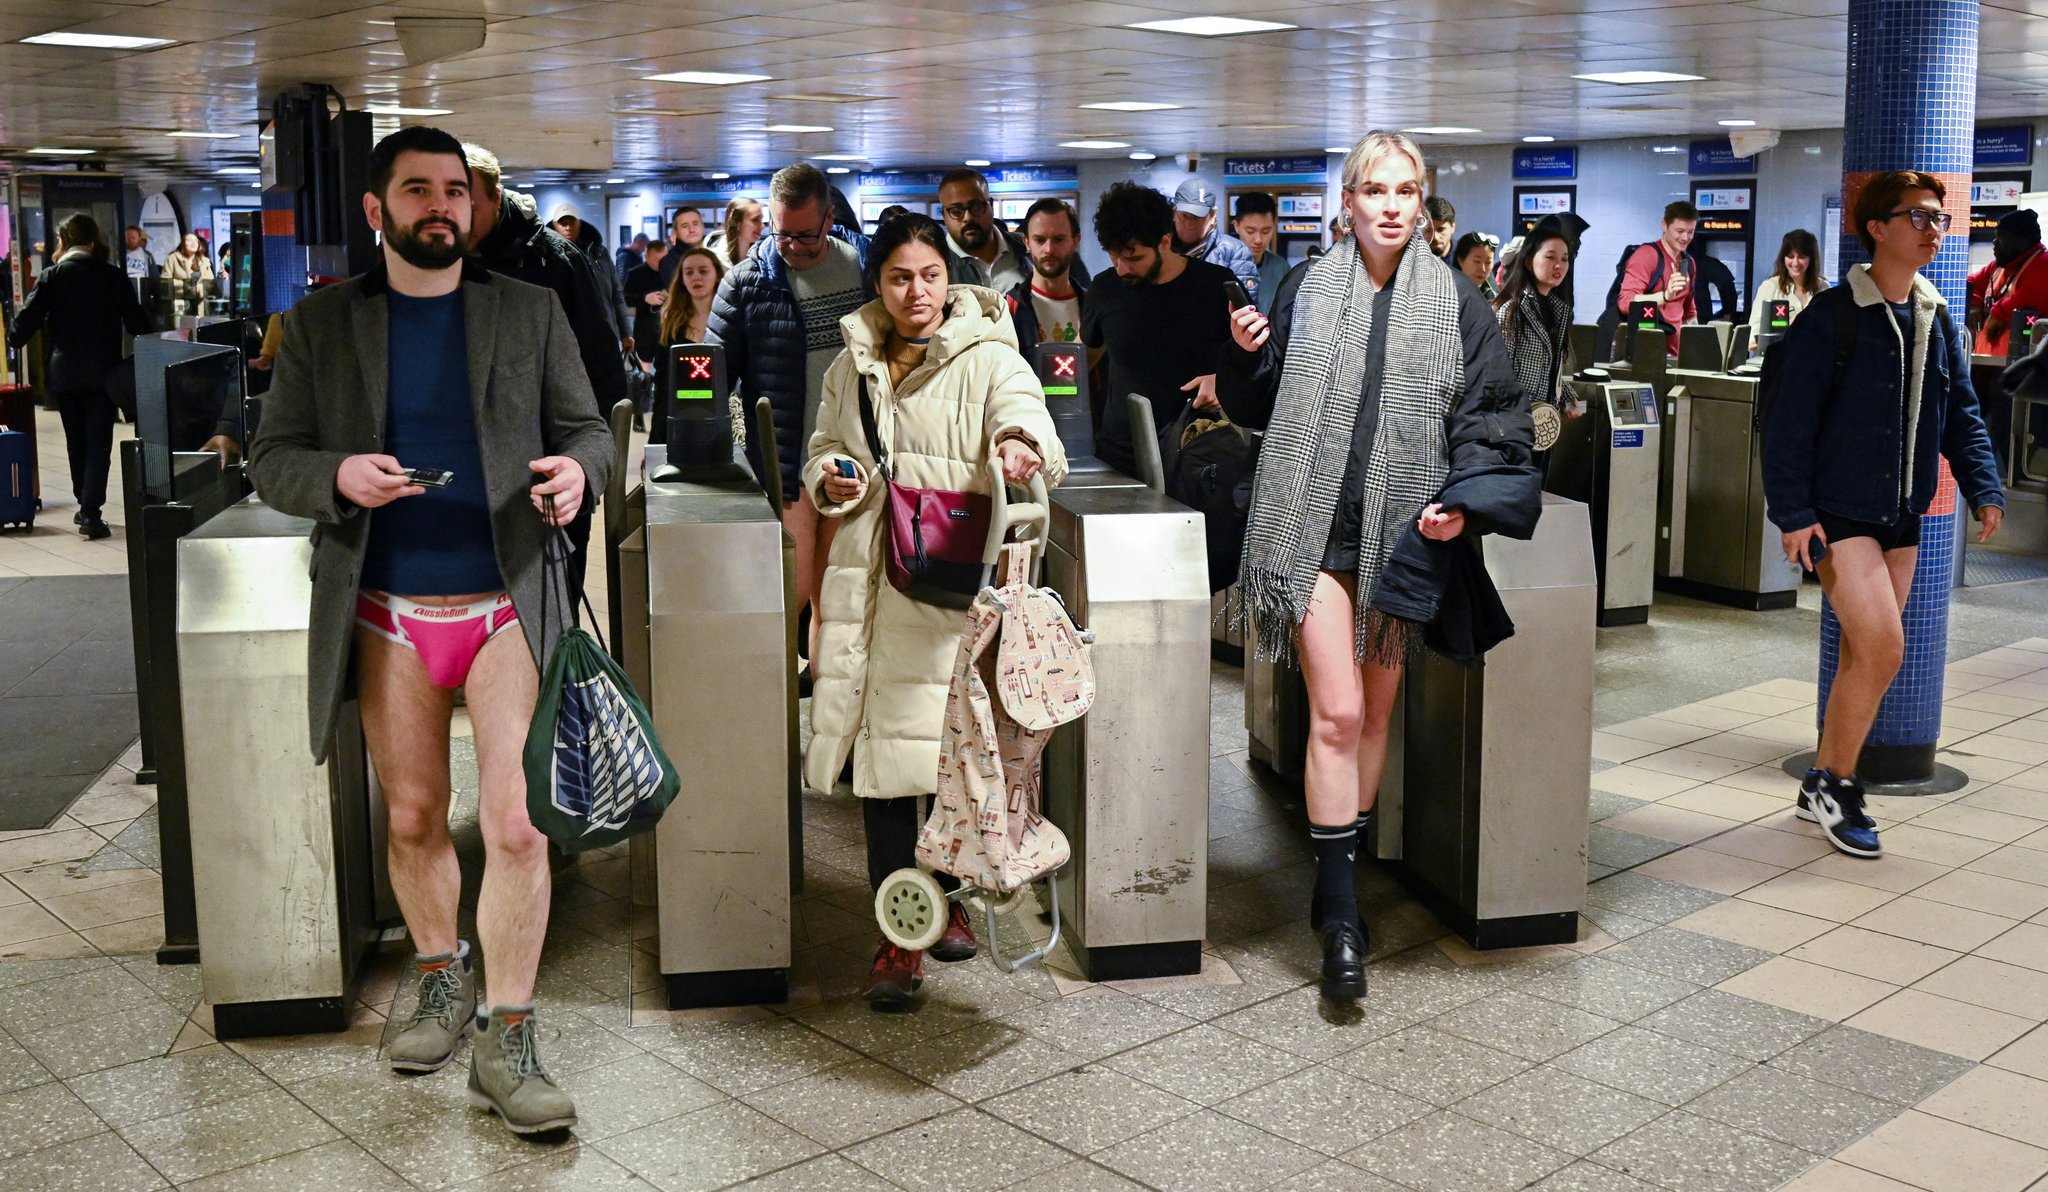 8일 영국 런던에서 열린 바지 벗고 지하철 타기’ 참가자들이 행사 참가를 위해 개찰구를 빠져나가고 있다. 로이터=연합뉴스